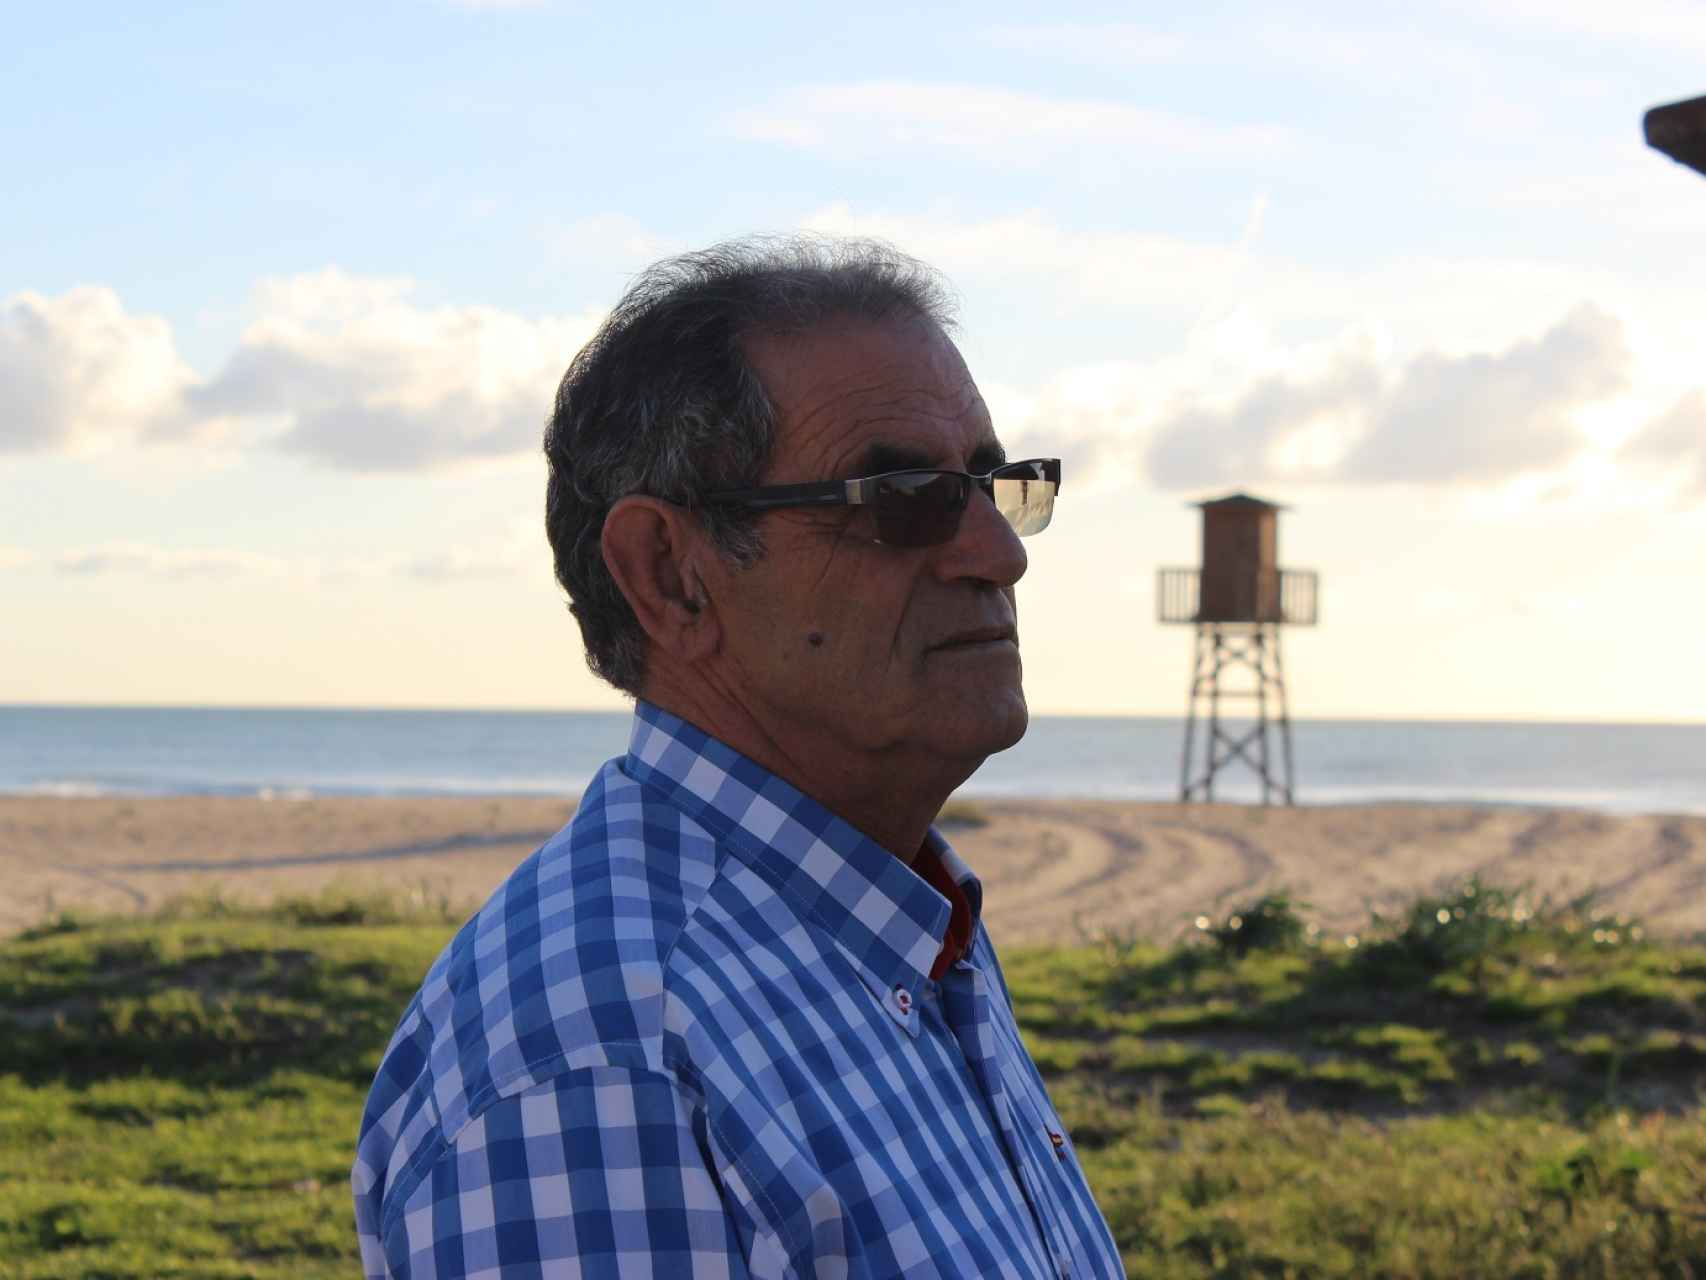 Antonio vive tranquilo regentando el Chiringuito Pleamar en la playa de Zahara de los Atunes